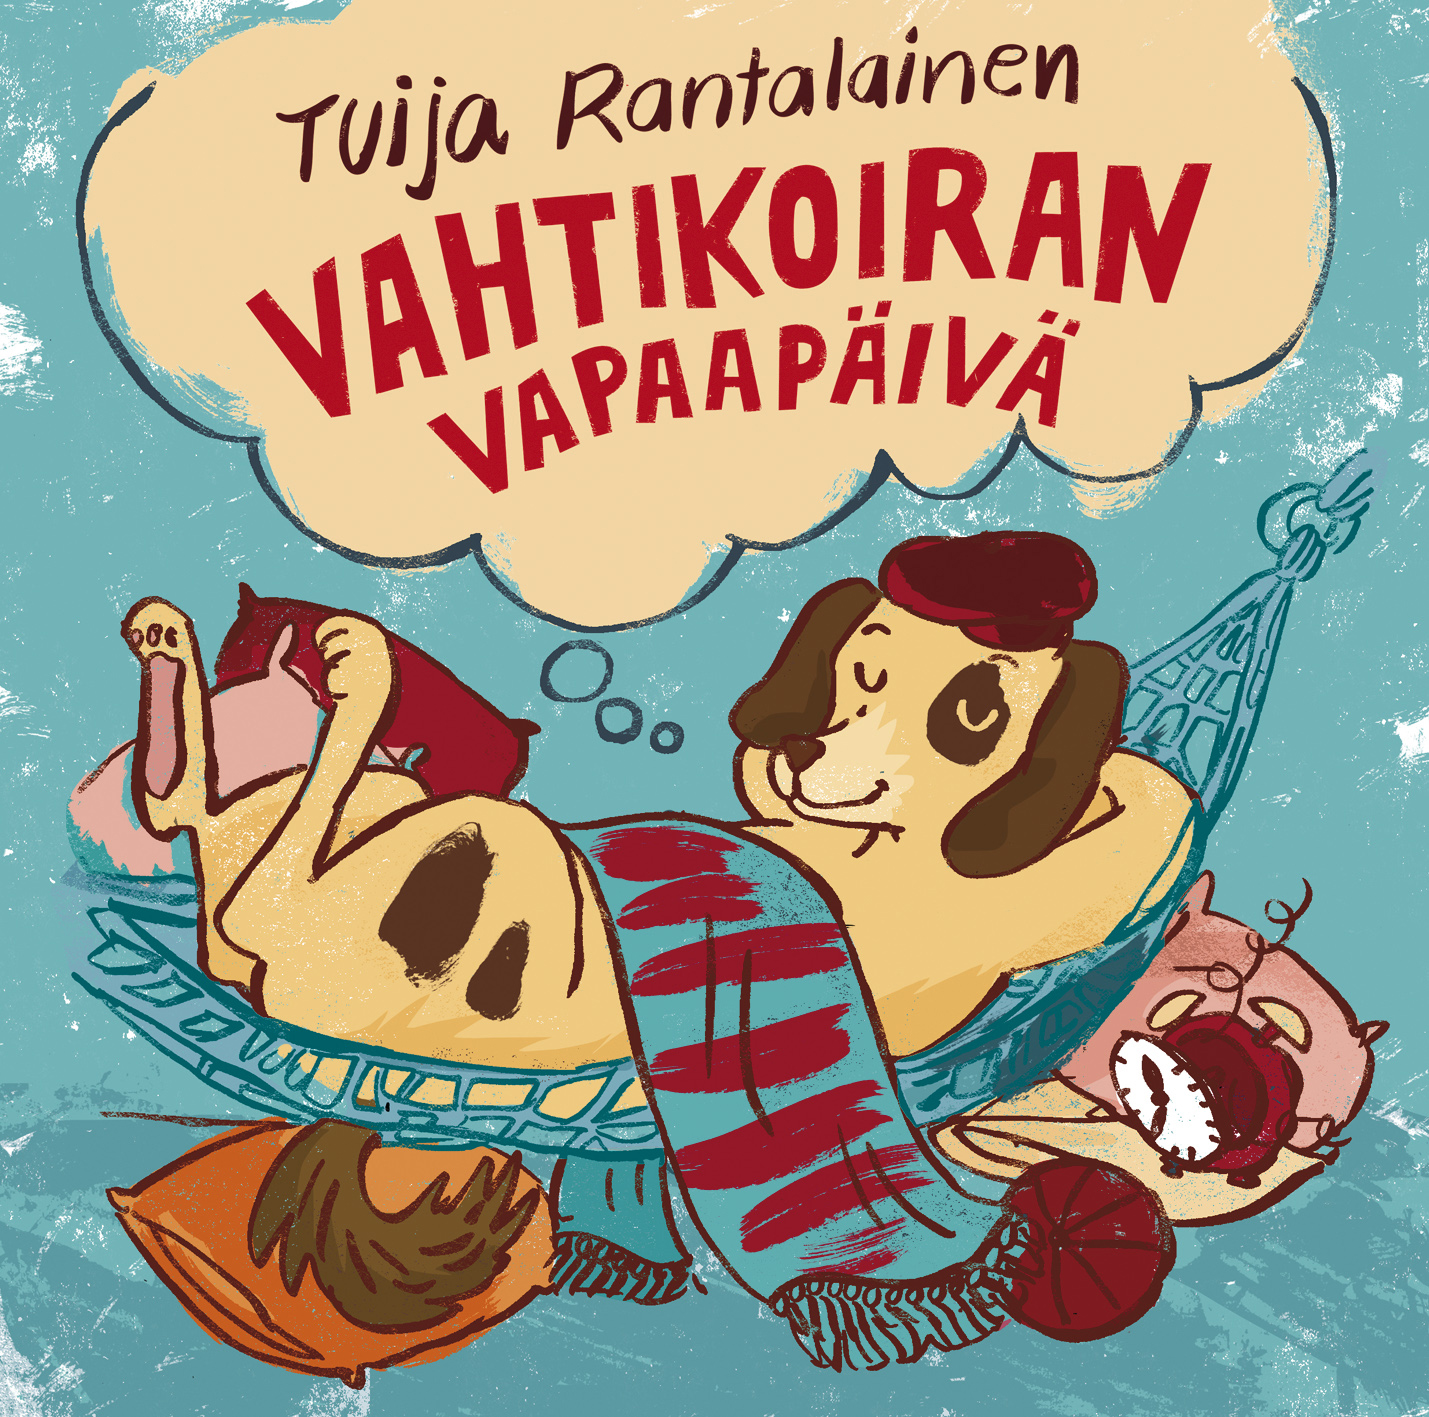 Tuija Rantalainen - Vahtikoiran Vapaap iv  - CD